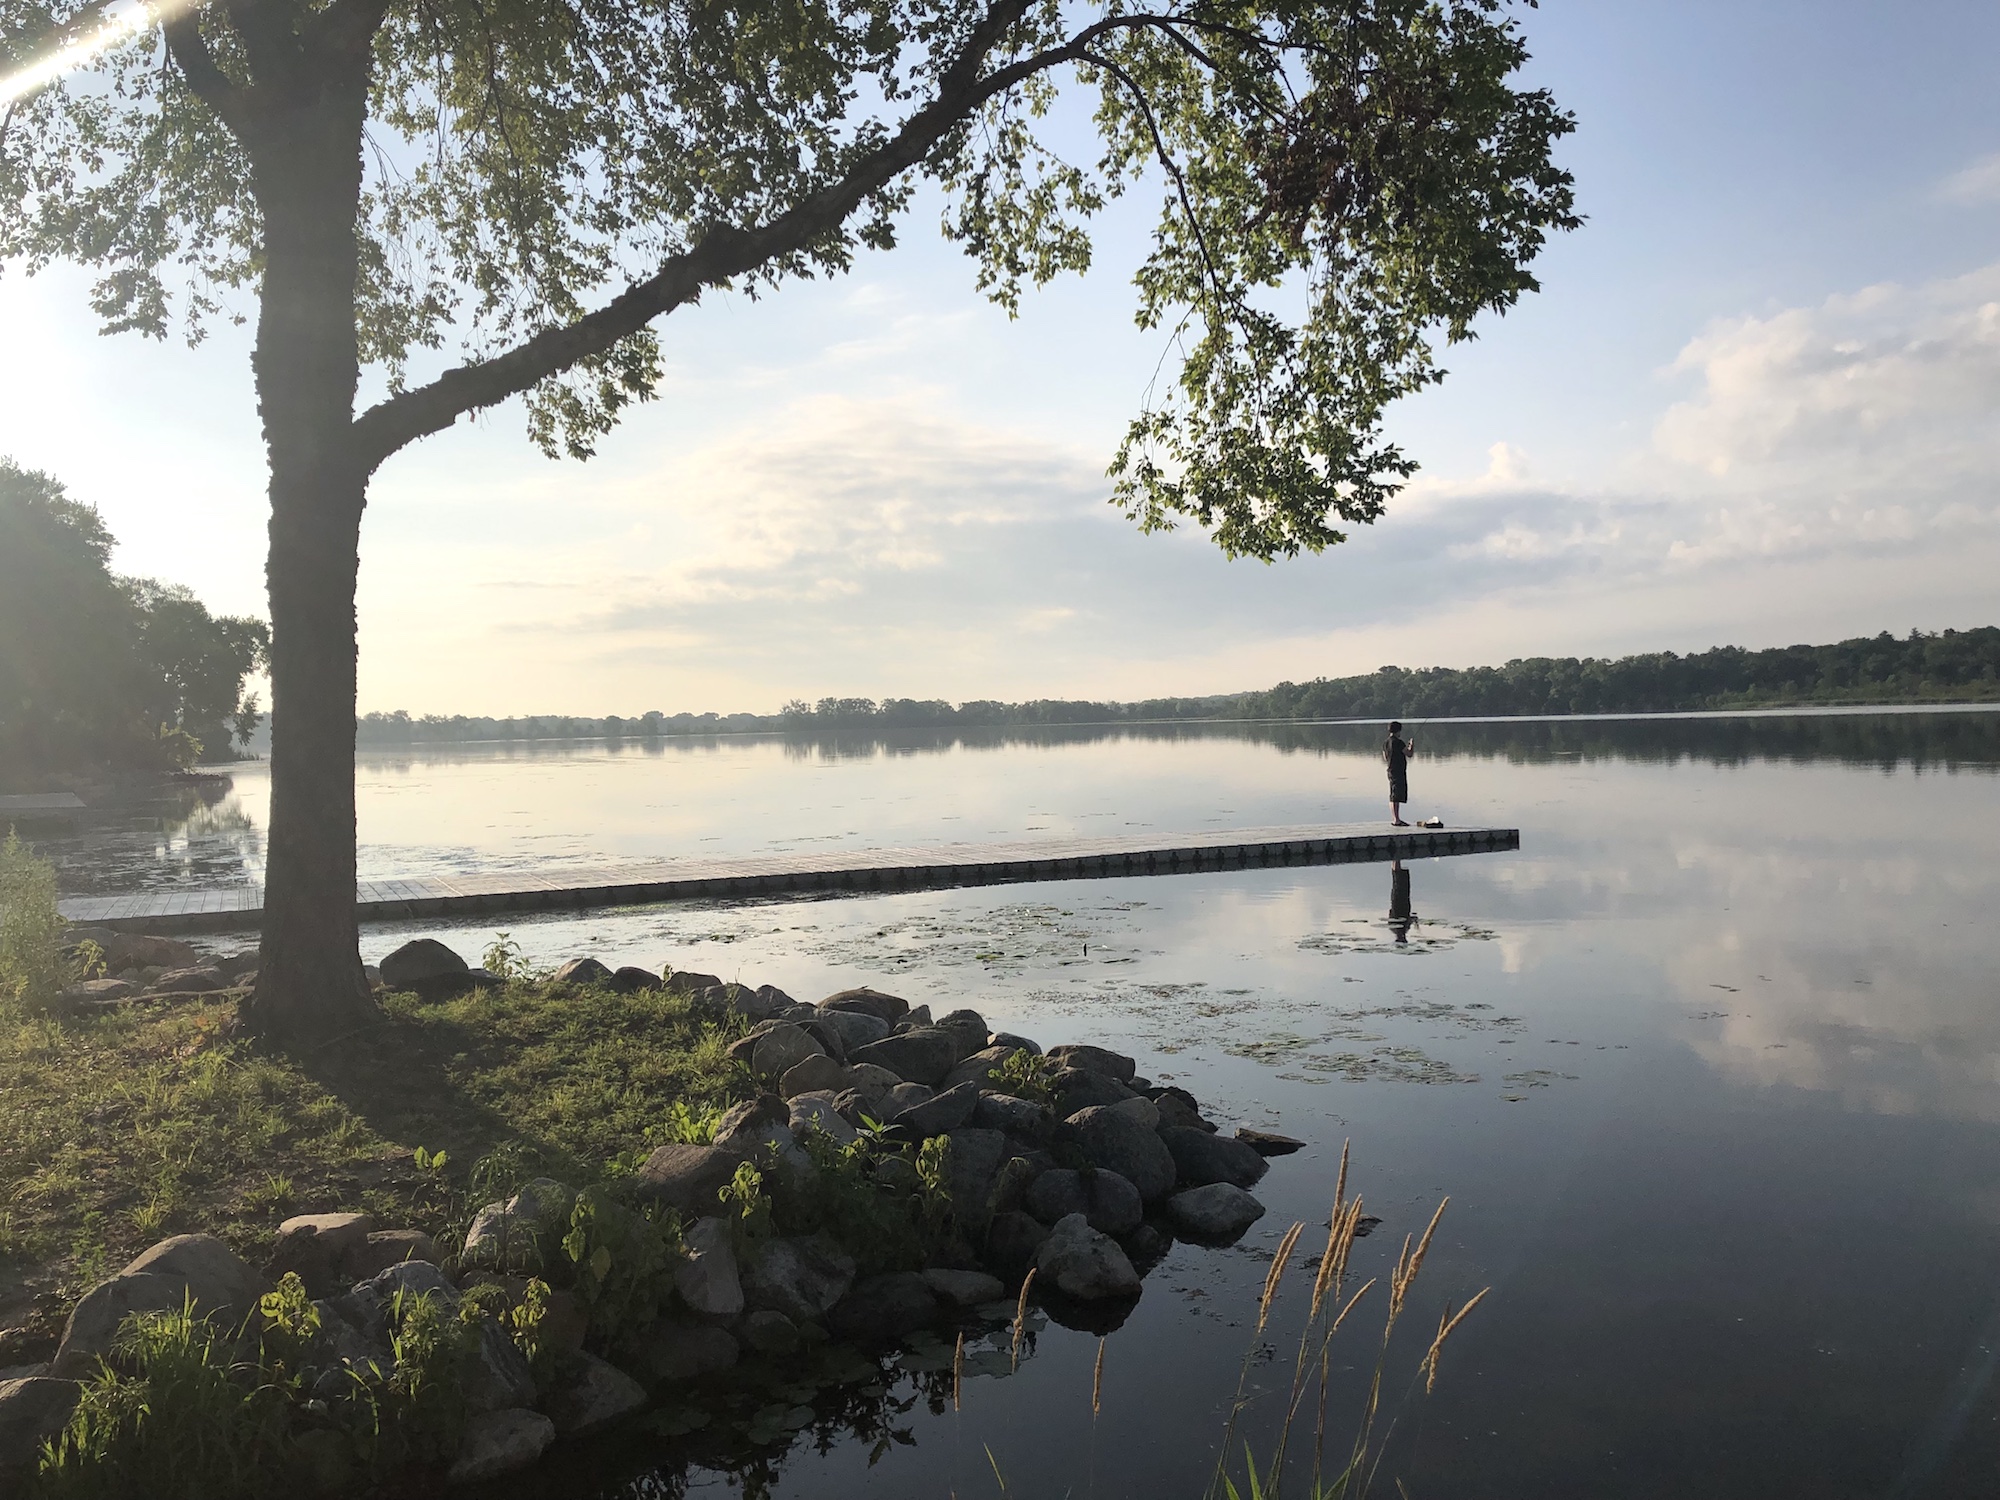 Lake Wingra on July 3, 2019.